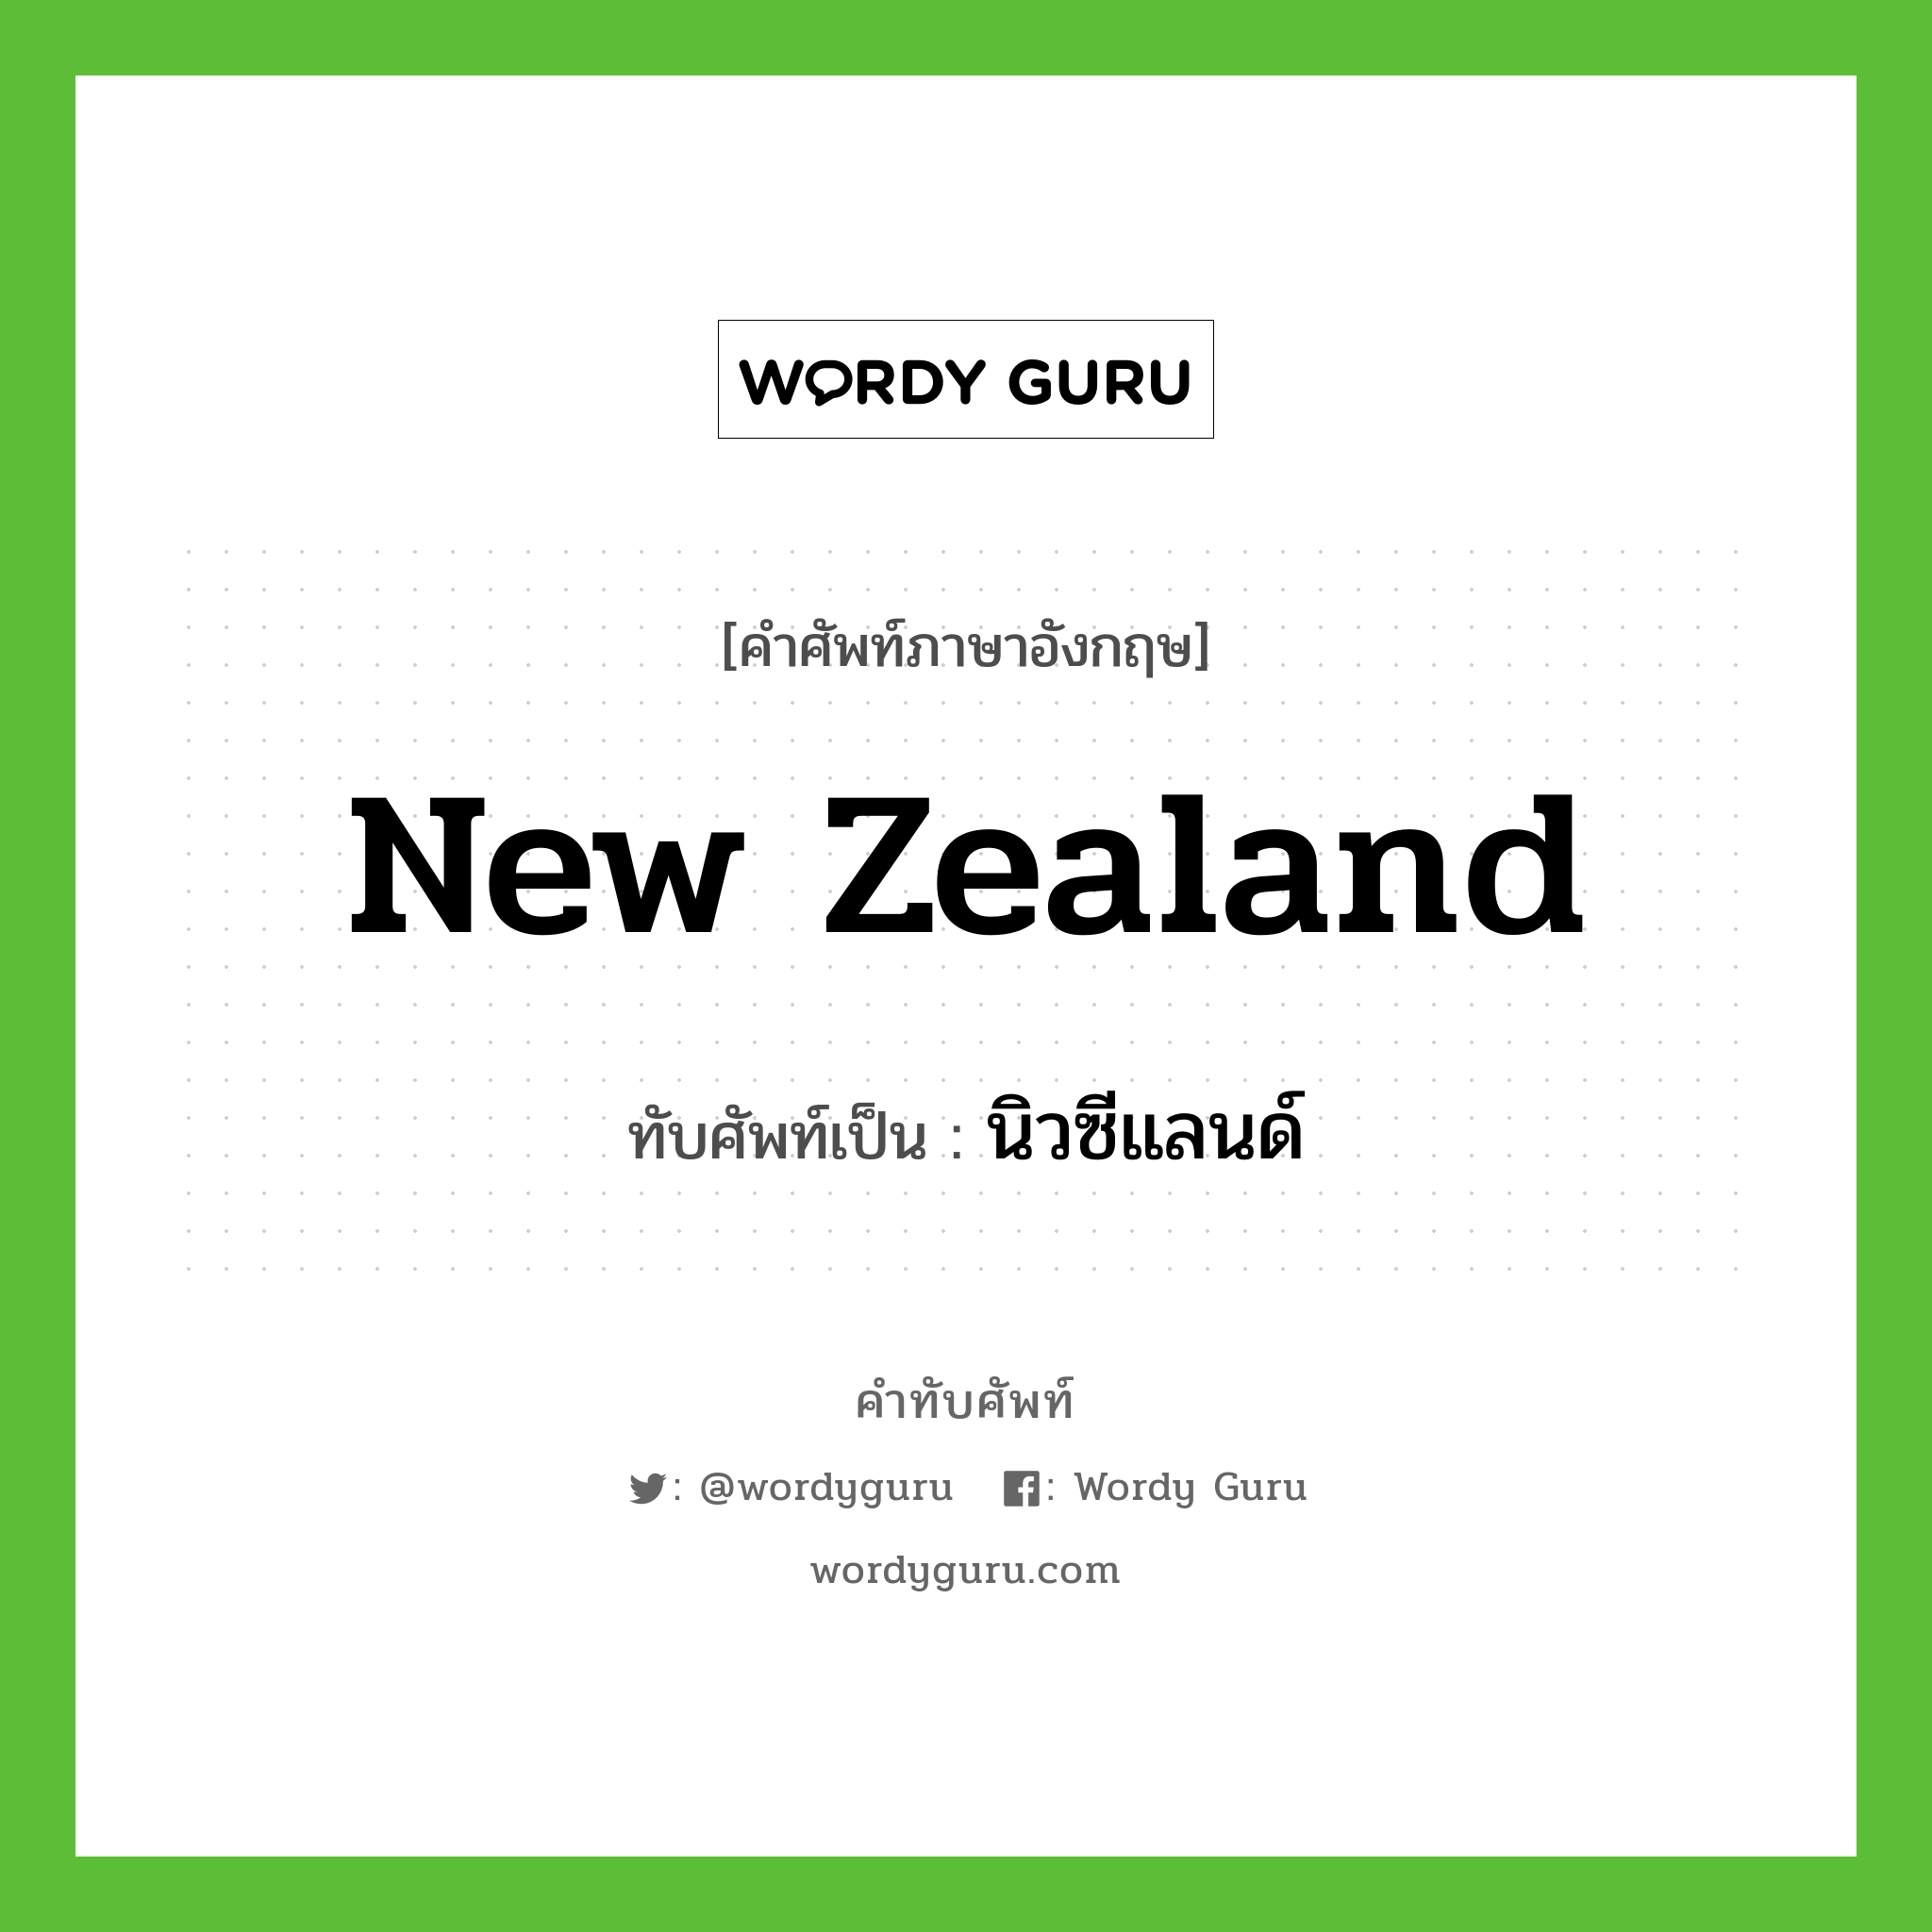 New Zealand เขียนเป็นคำไทยว่าอะไร?, คำศัพท์ภาษาอังกฤษ New Zealand ทับศัพท์เป็น นิวซีแลนด์